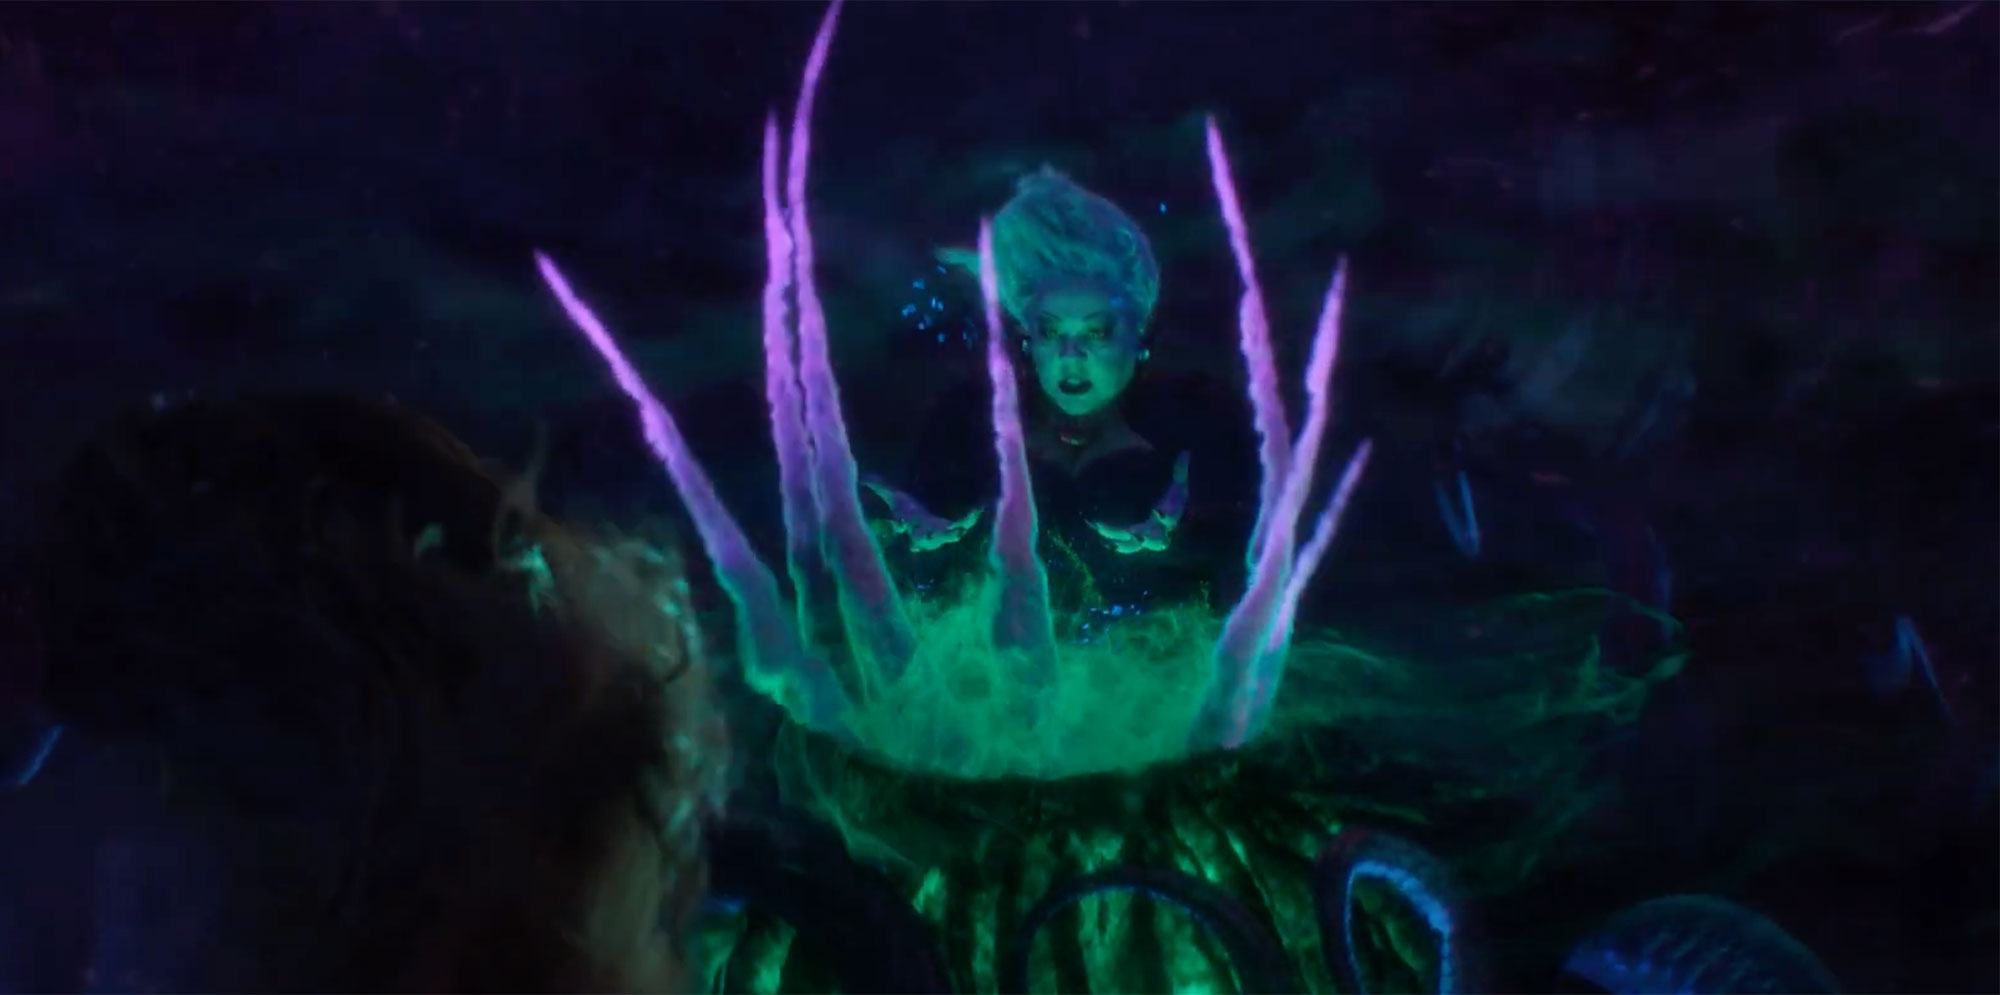 Ursula là một phần quan trọng của bộ phim này